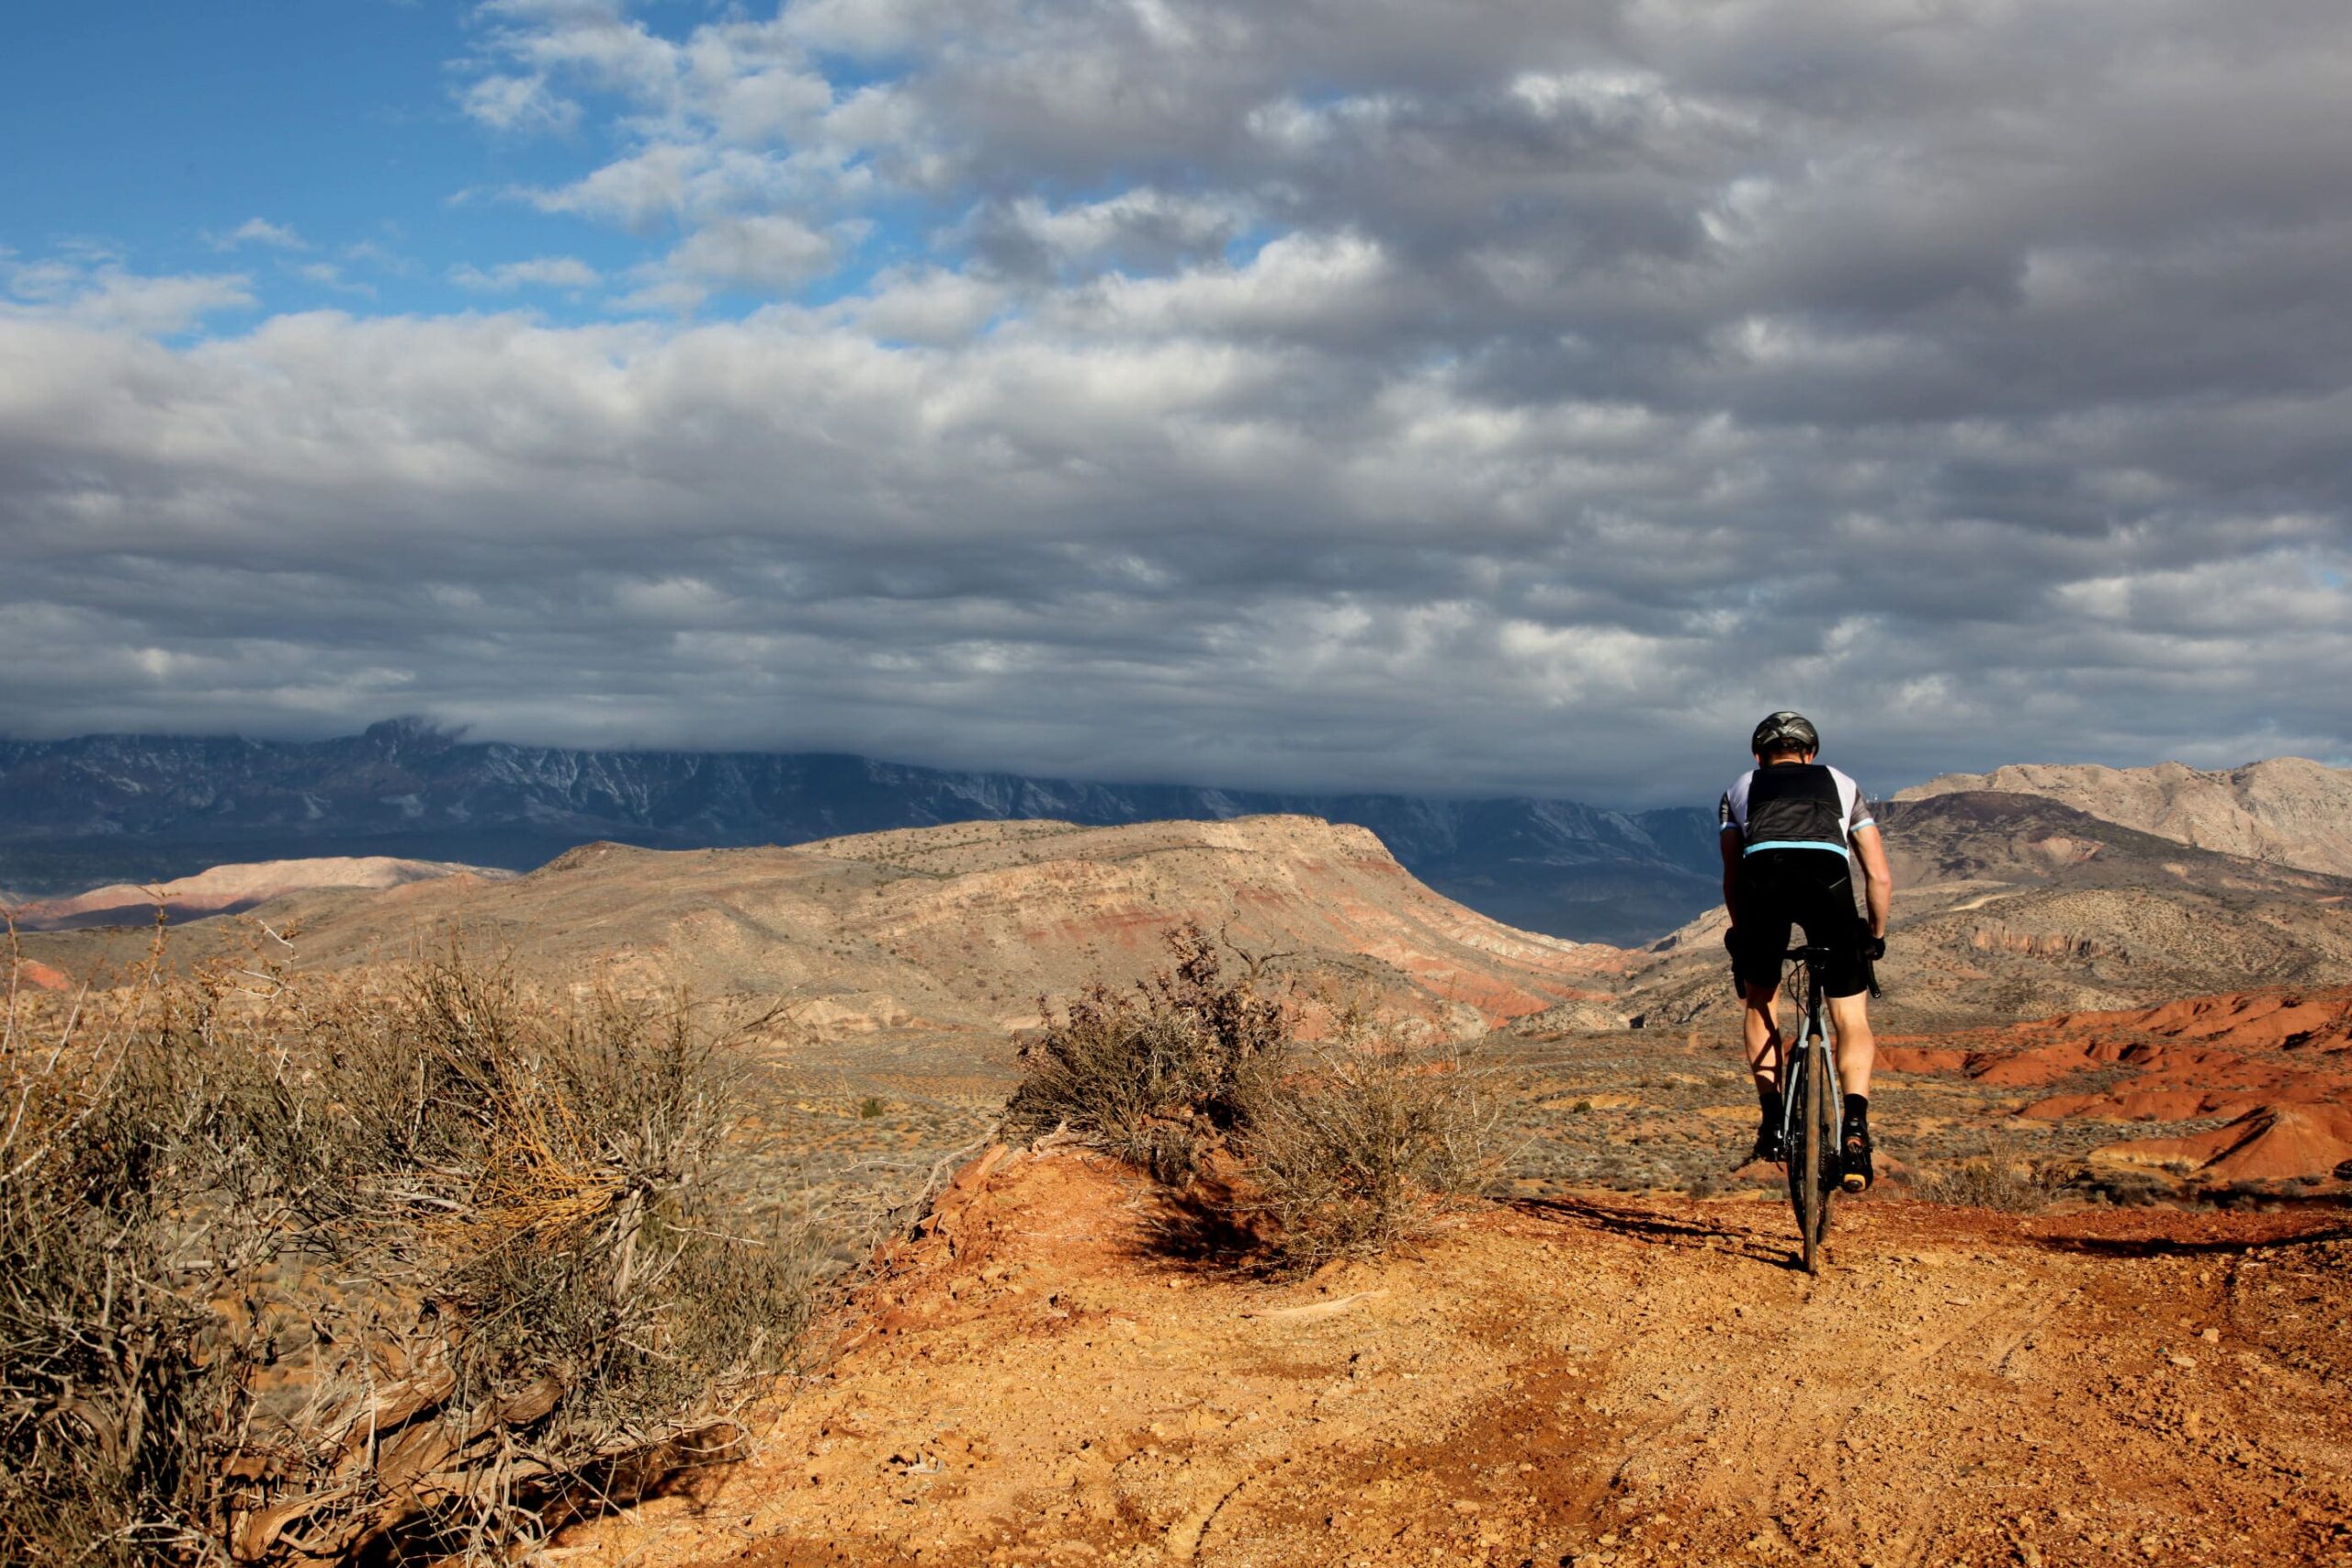 Ciclista en lo alto de una badland. Se observa el paisaje del desierto desde su bici.